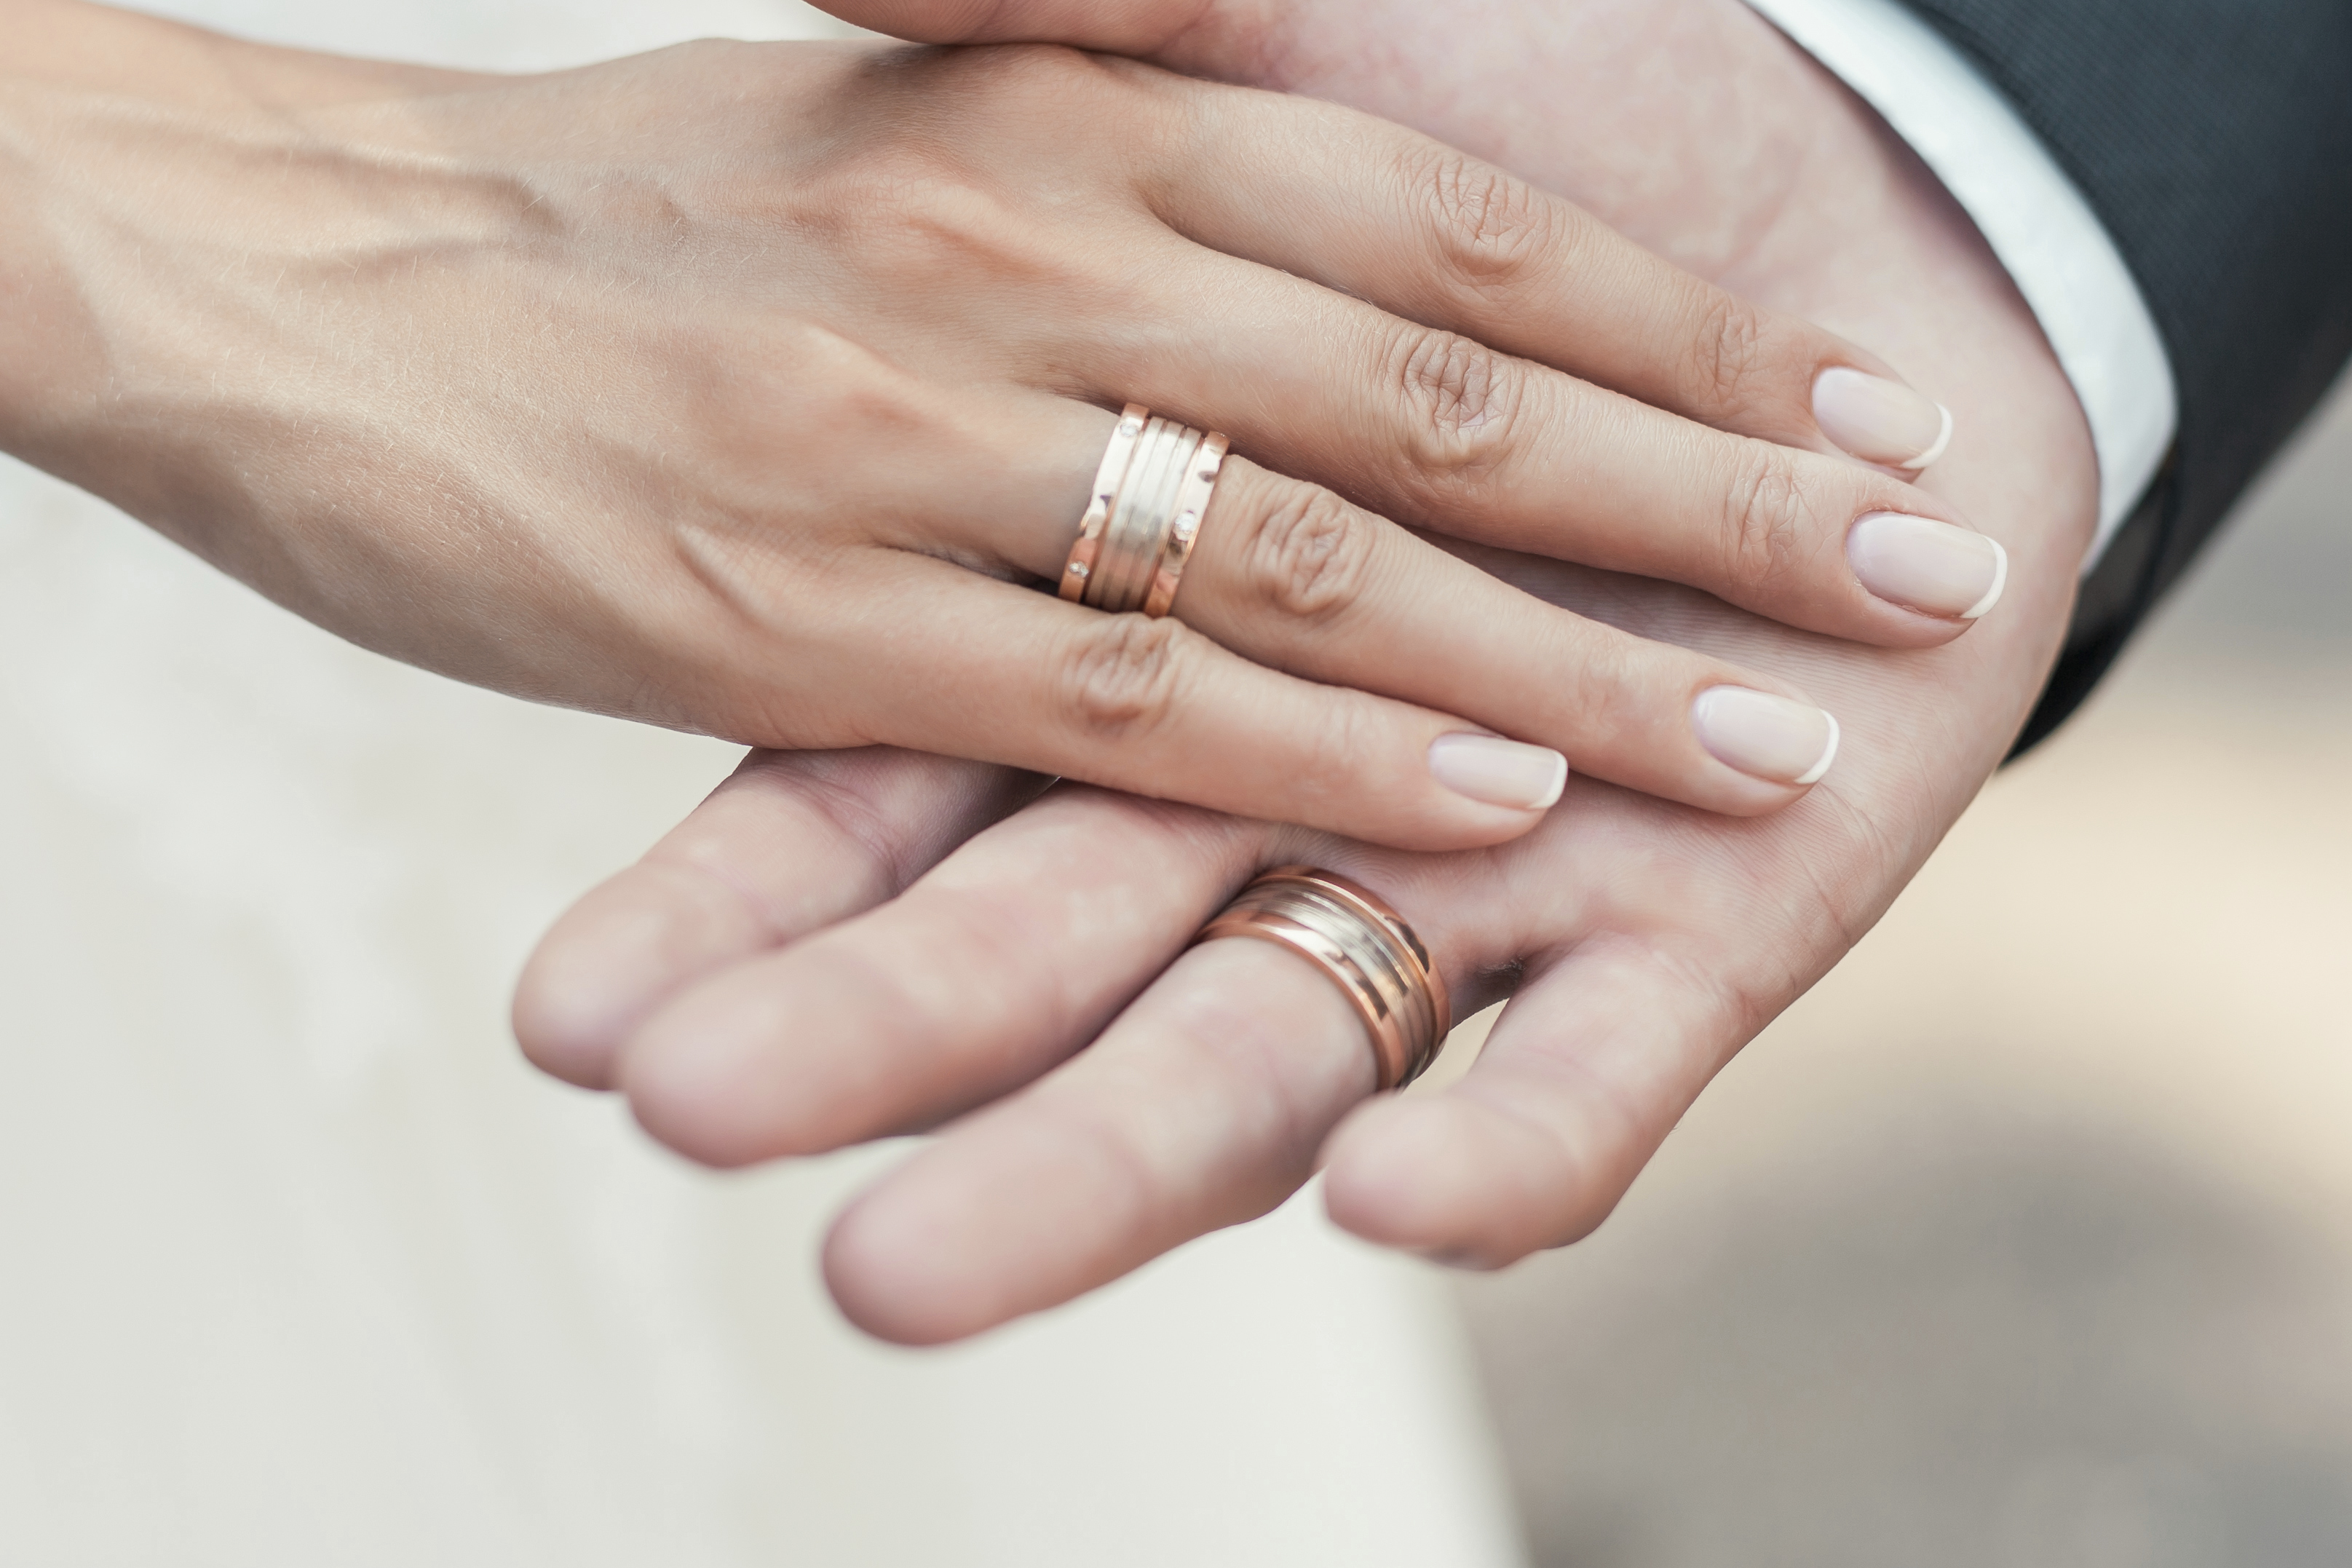 Wedding ring white gold or platinum